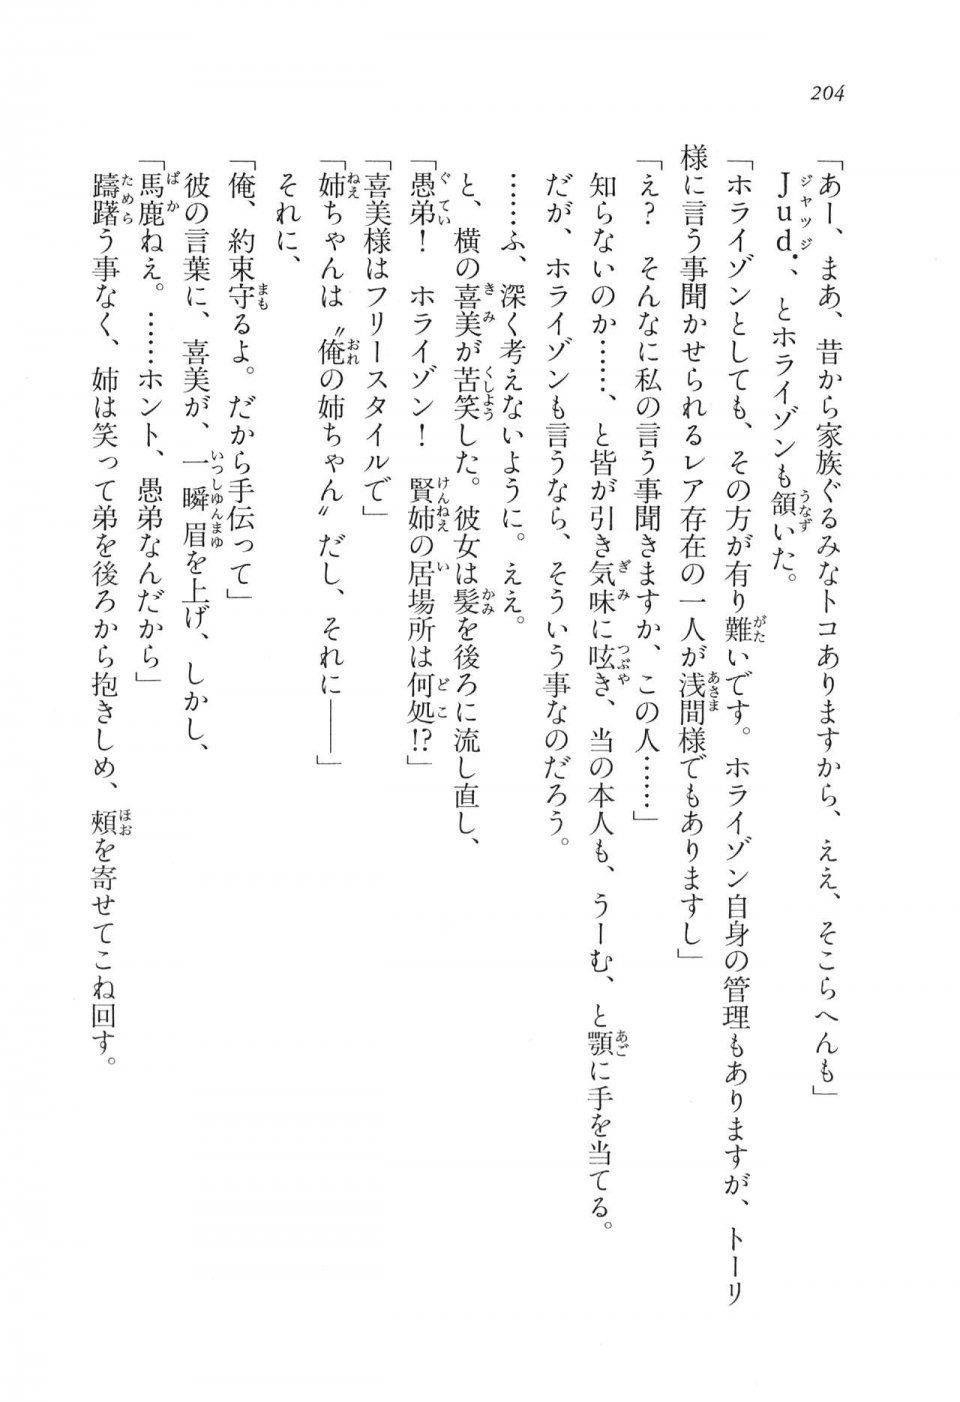 Kyoukai Senjou no Horizon LN Vol 11(5A) - Photo #204